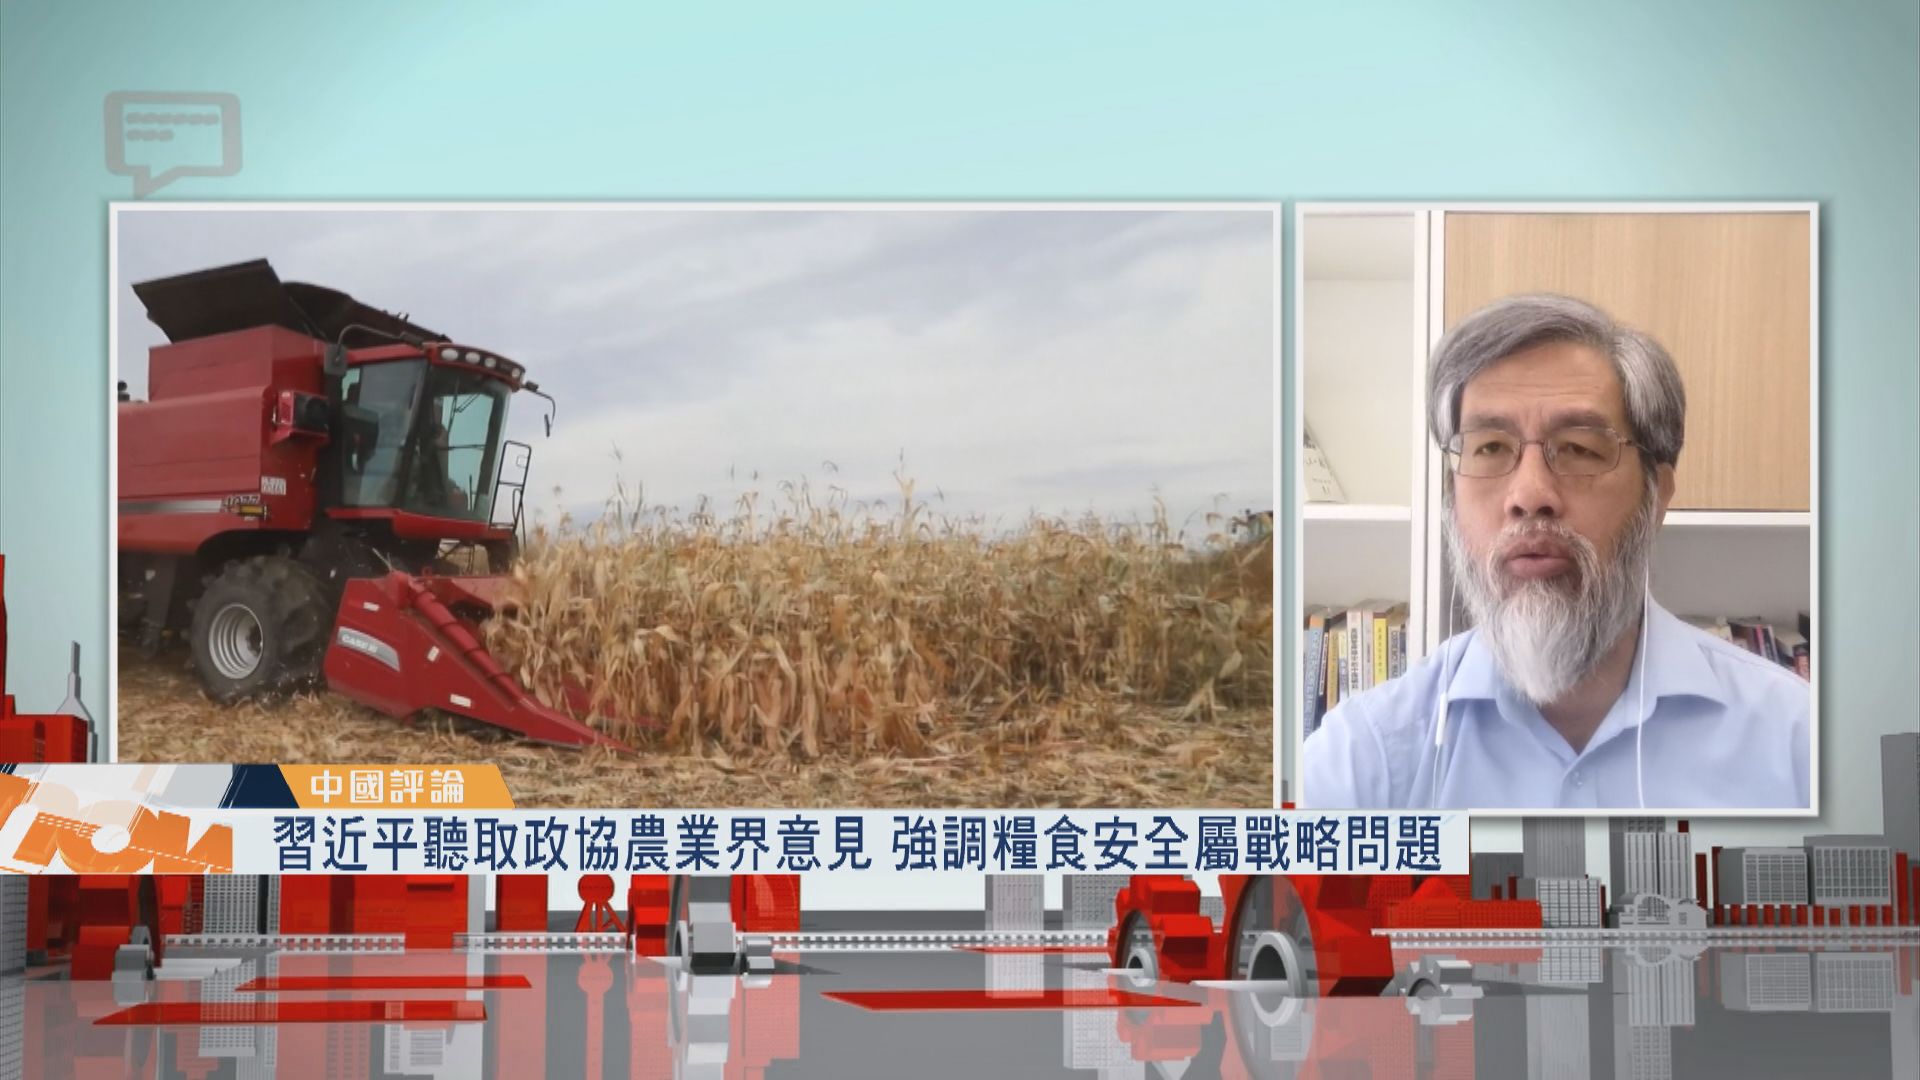 【中國評論】習近平強調糧食安全屬戰略問題